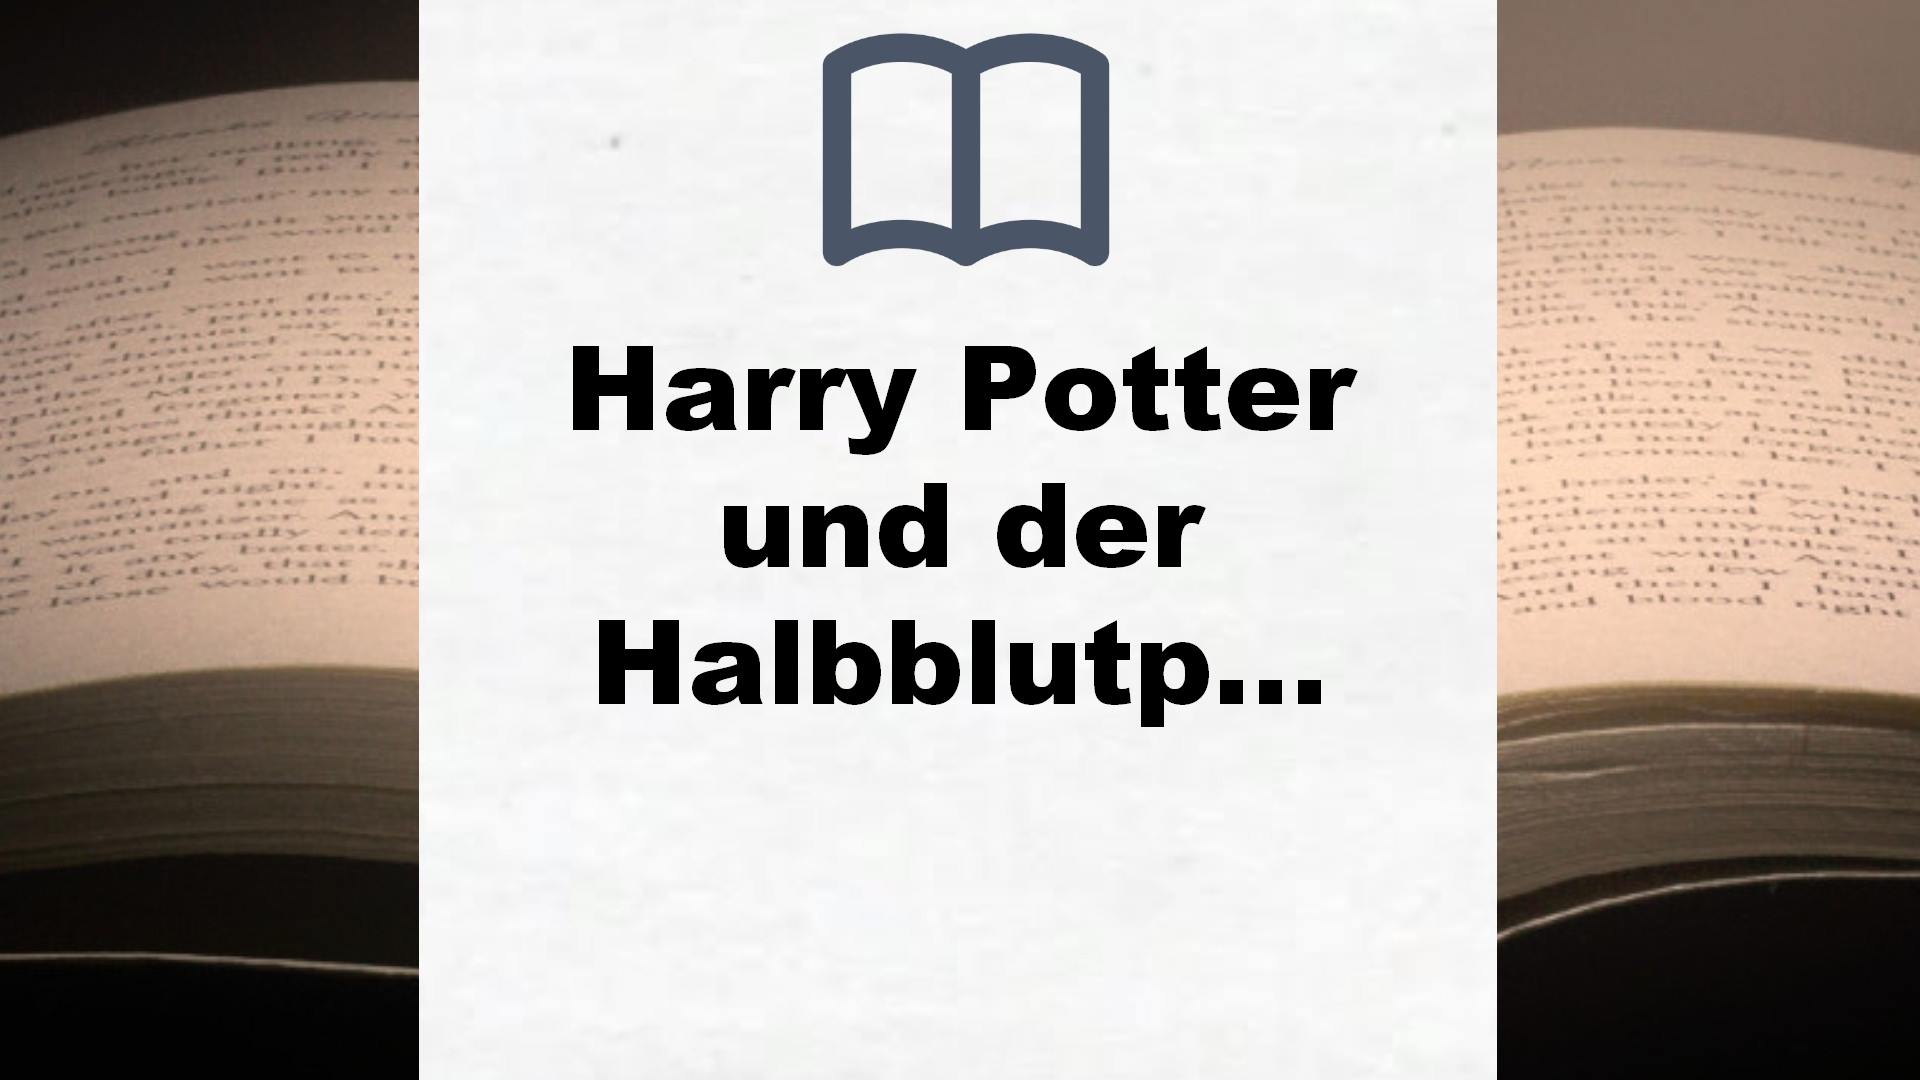 Harry Potter und der Halbblutprinz (Harry Potter 6): Ausgezeichnet mit dem British Book Award, Book of the Year 2006 und dem Deutschen Phantastik-Preis 2006, Kategorie internationaler Roman – Buchrezension